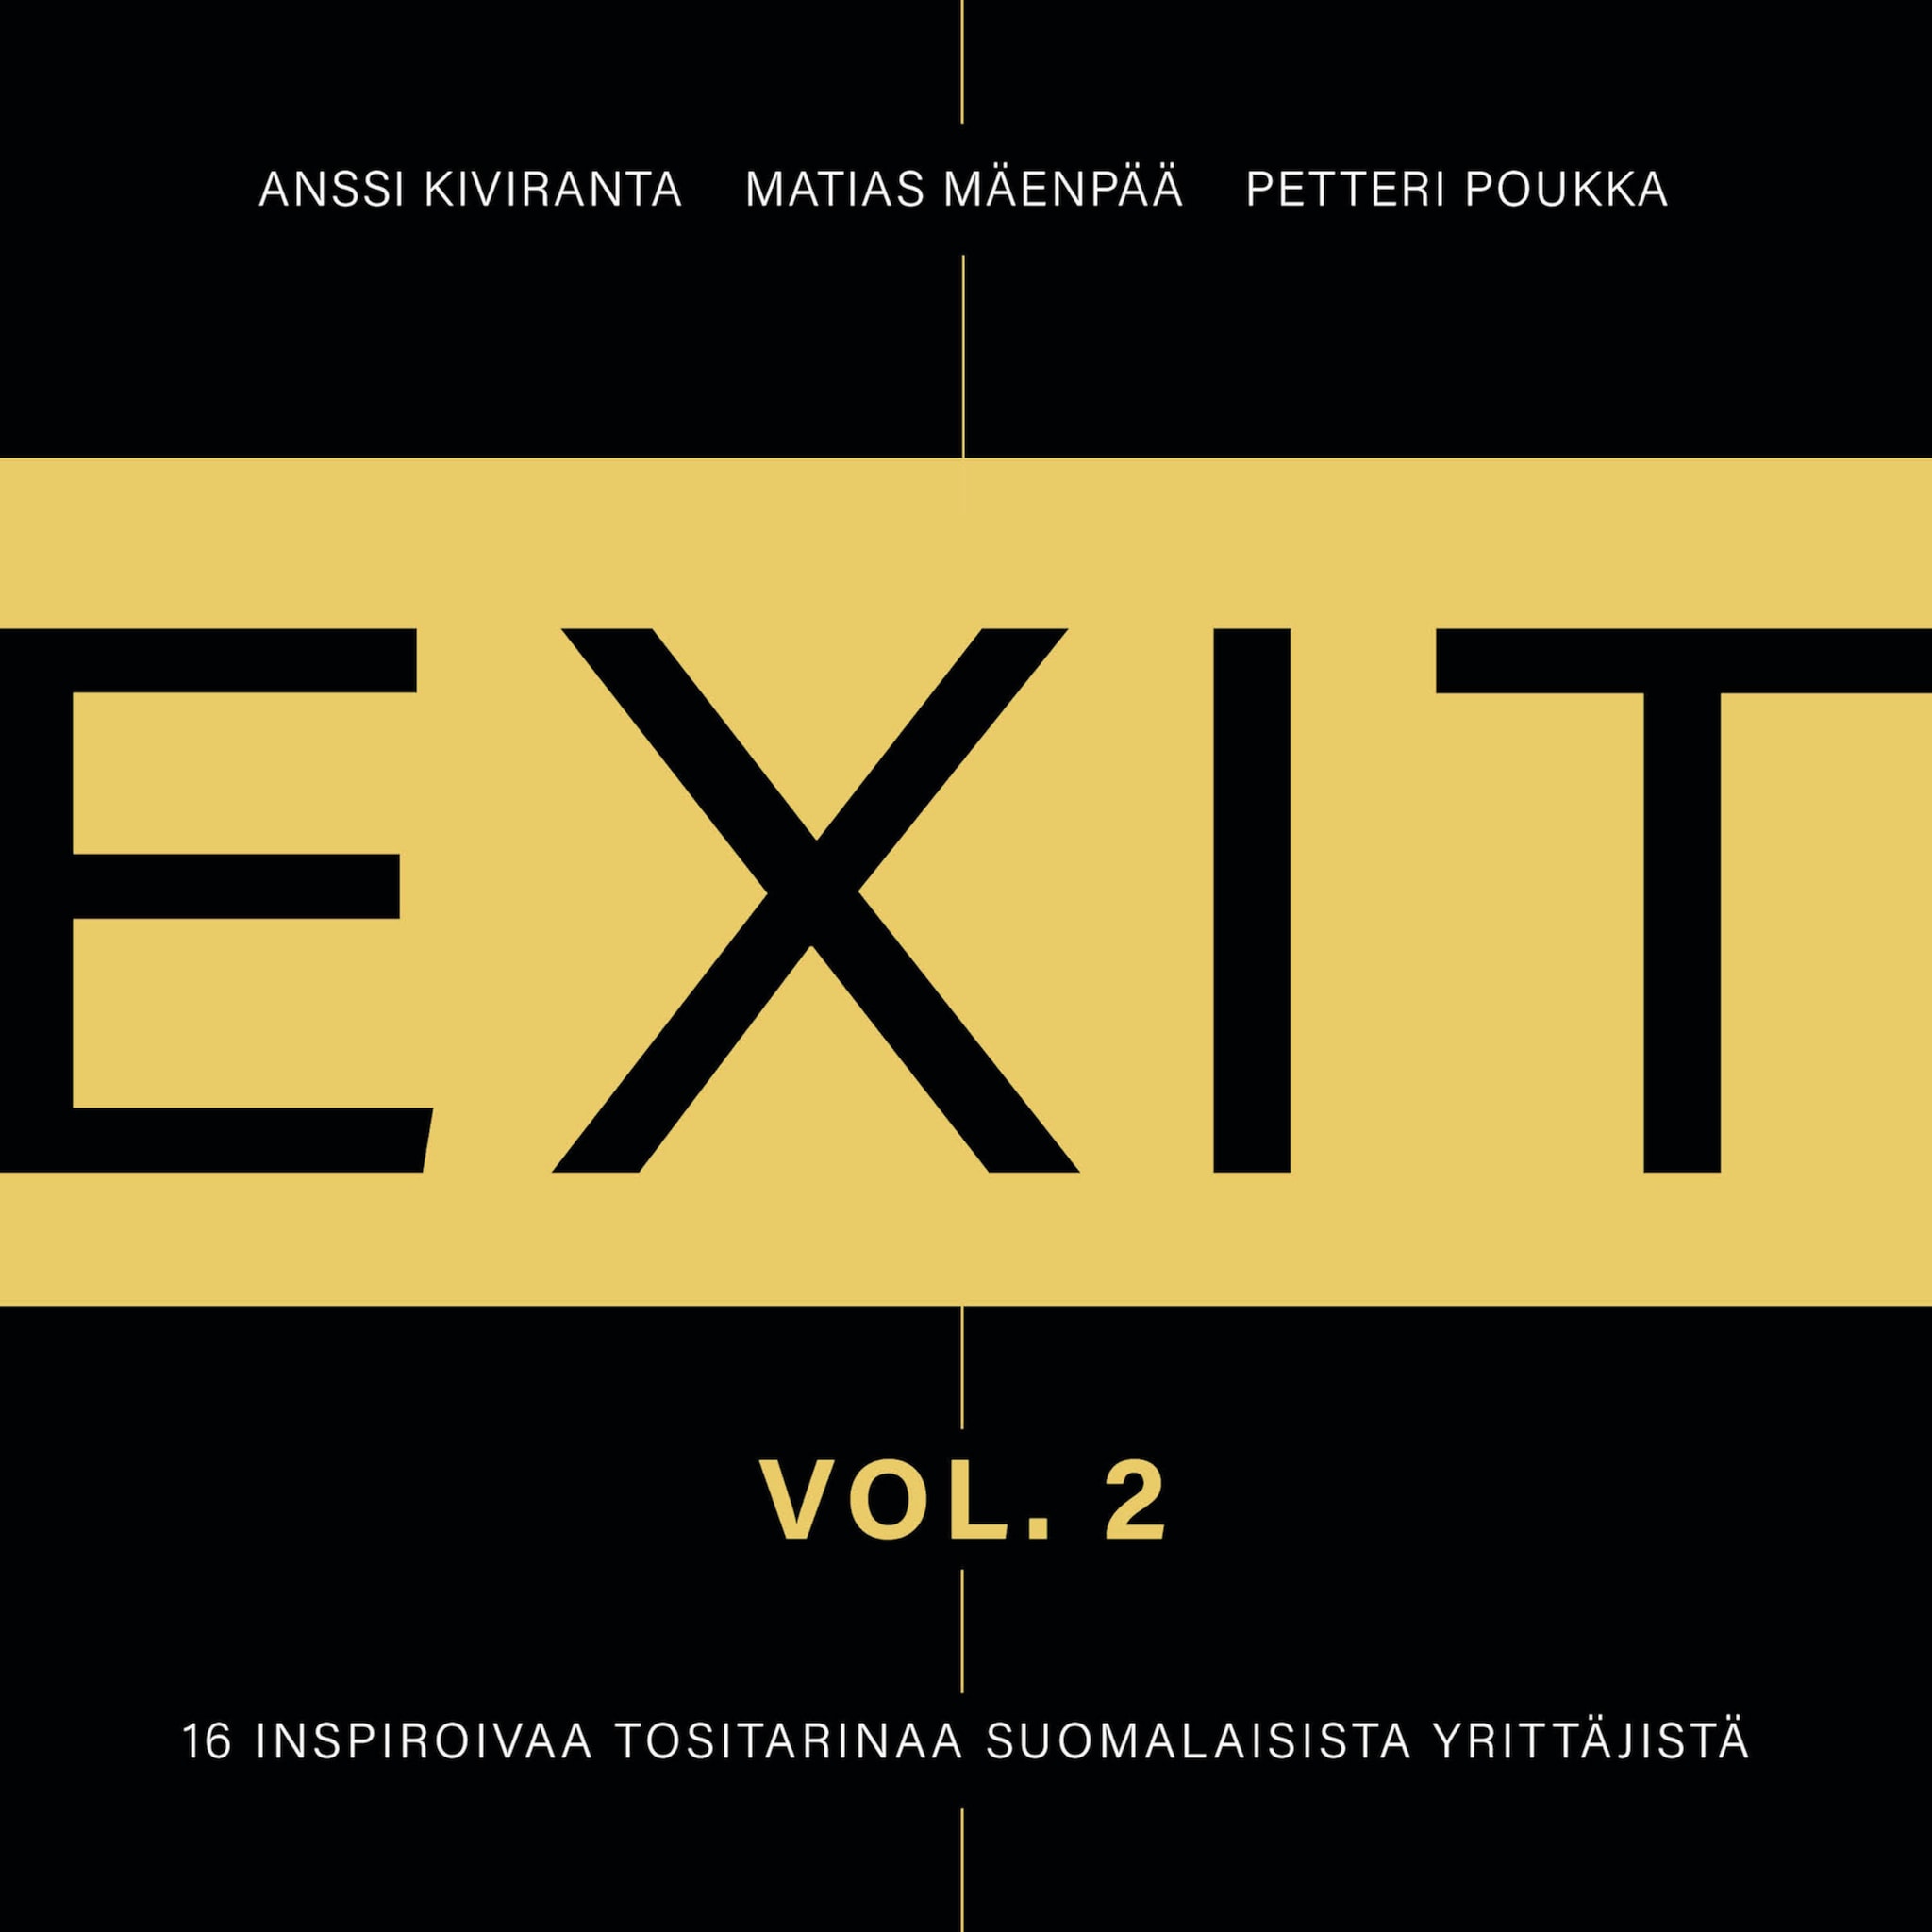 Exit 2,16 inspiroivaa tositarinaa suomalaisista yrittäjistä ilmaiseksi